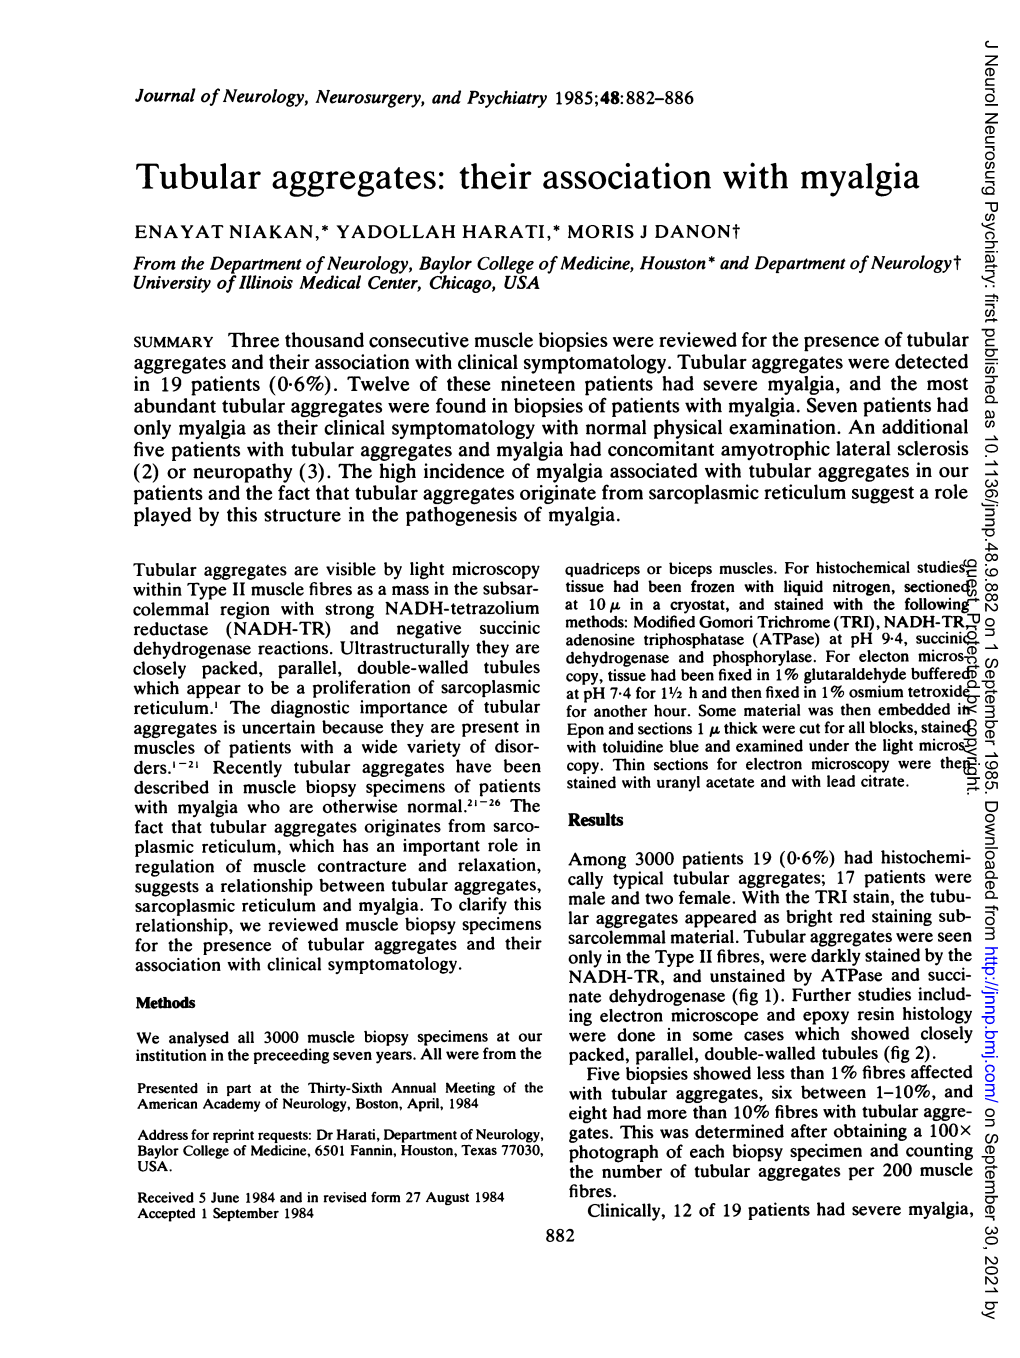 Tubular Aggregates: Their Association with Myalgia